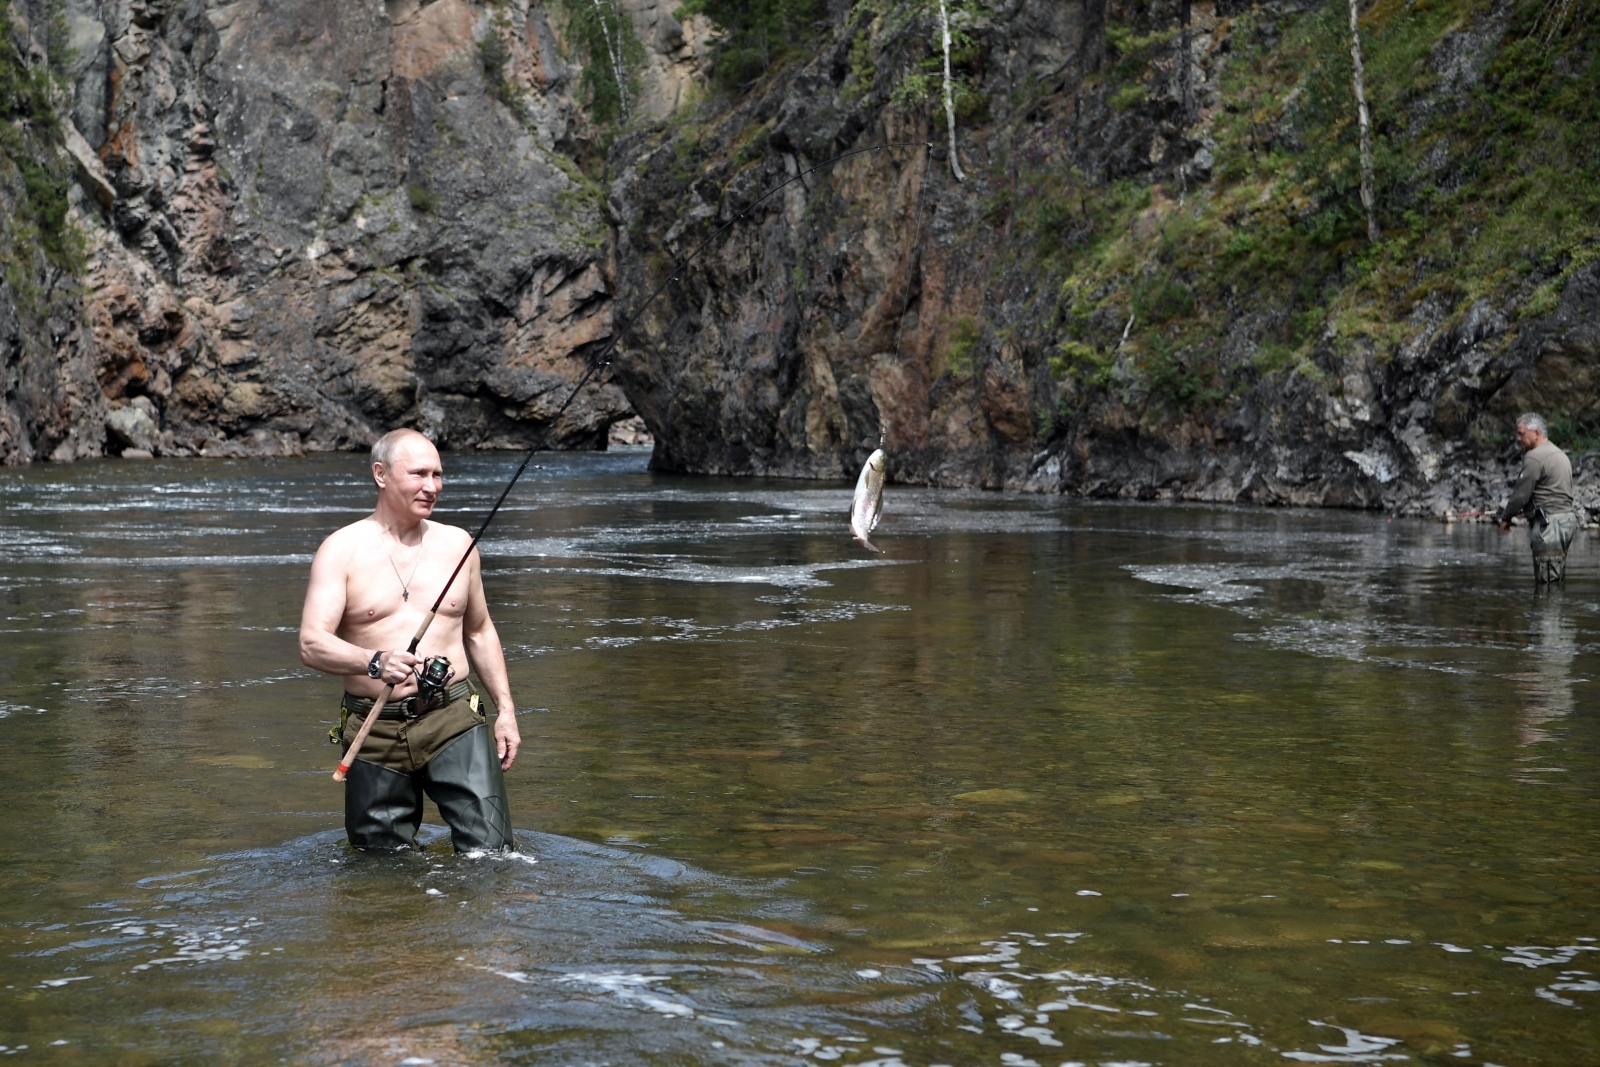 Vladimir Putin fishing